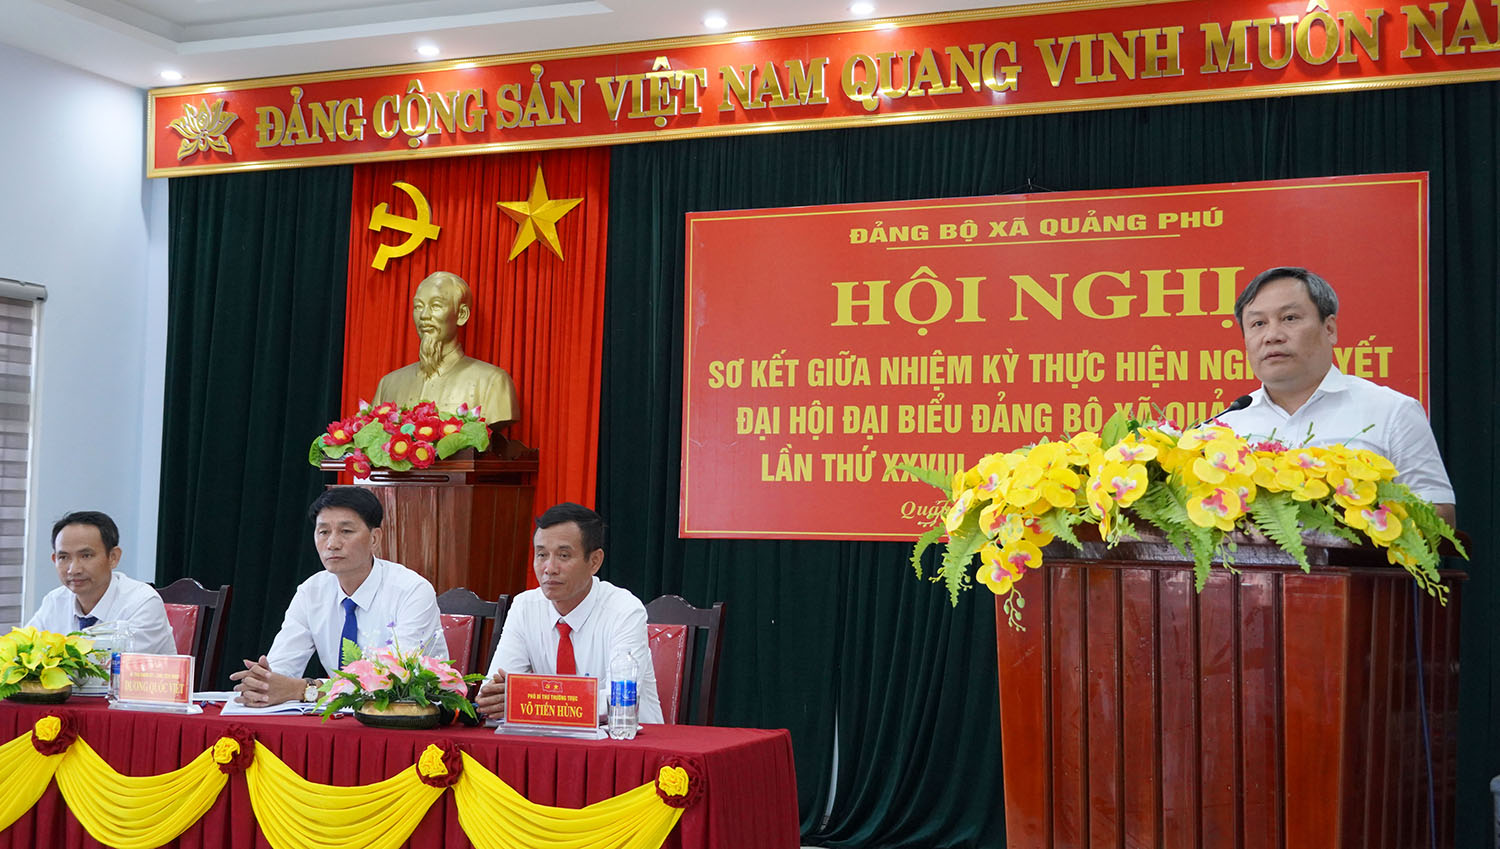 Đồng chí Bí thư Tỉnh ủy dự hội nghị sơ kết giữa nhiệm kỳ của Đảng bộ xã Quảng Phú